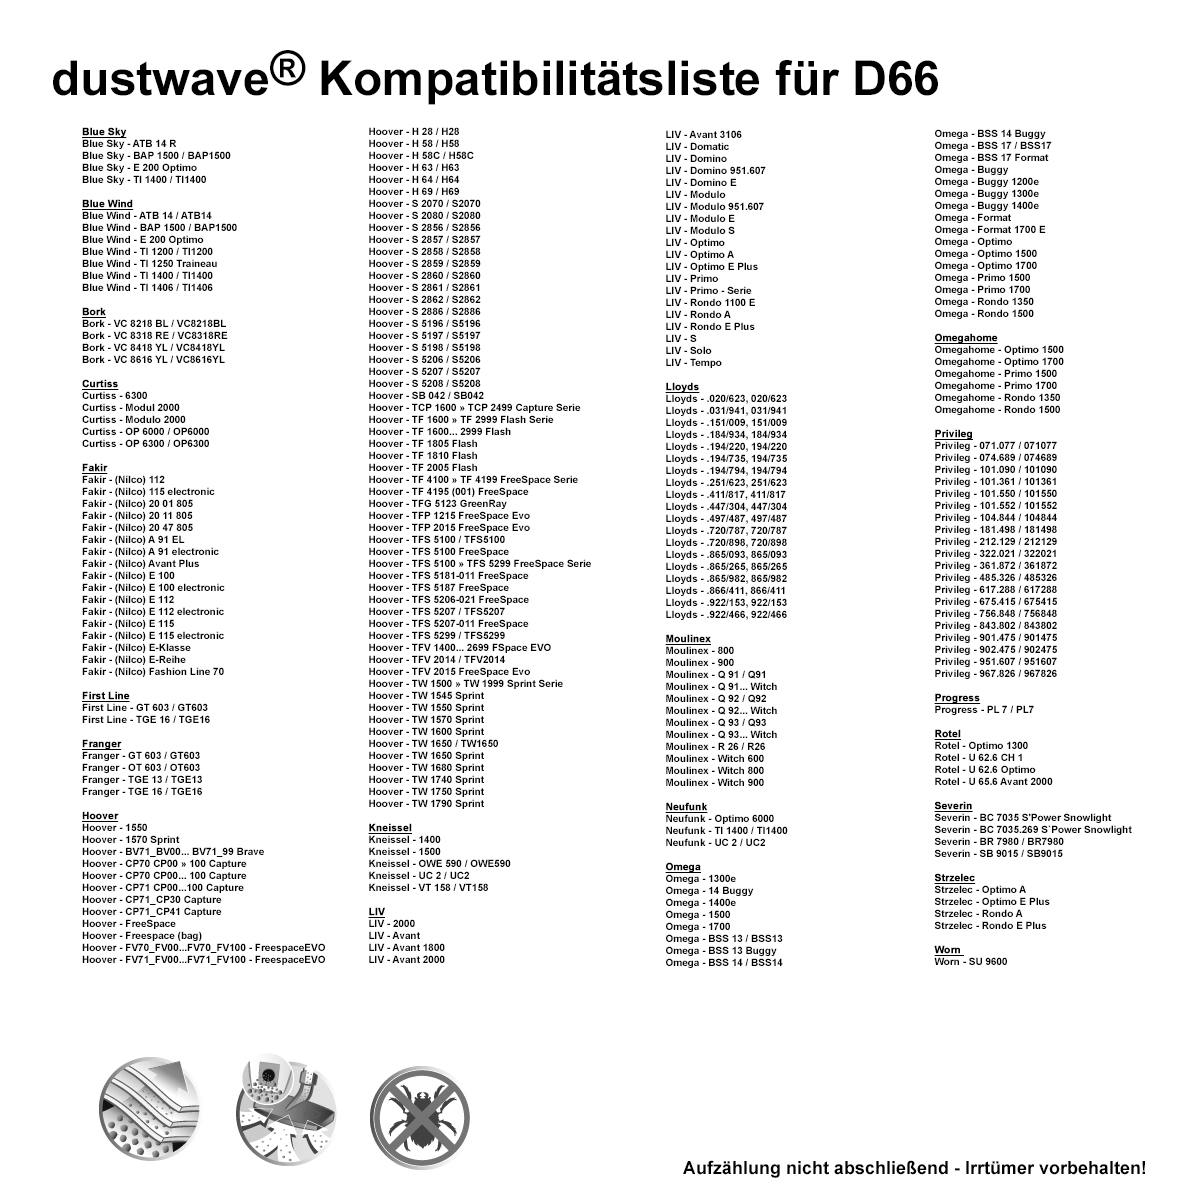 Dustwave® 10 Staubsaugerbeutel für Hoover FV70_FV00...FV70_FV100 - FreespaceEVO - hocheffizient, mehrlagiges Mikrovlies mit Hygieneverschluss - Made in Germany